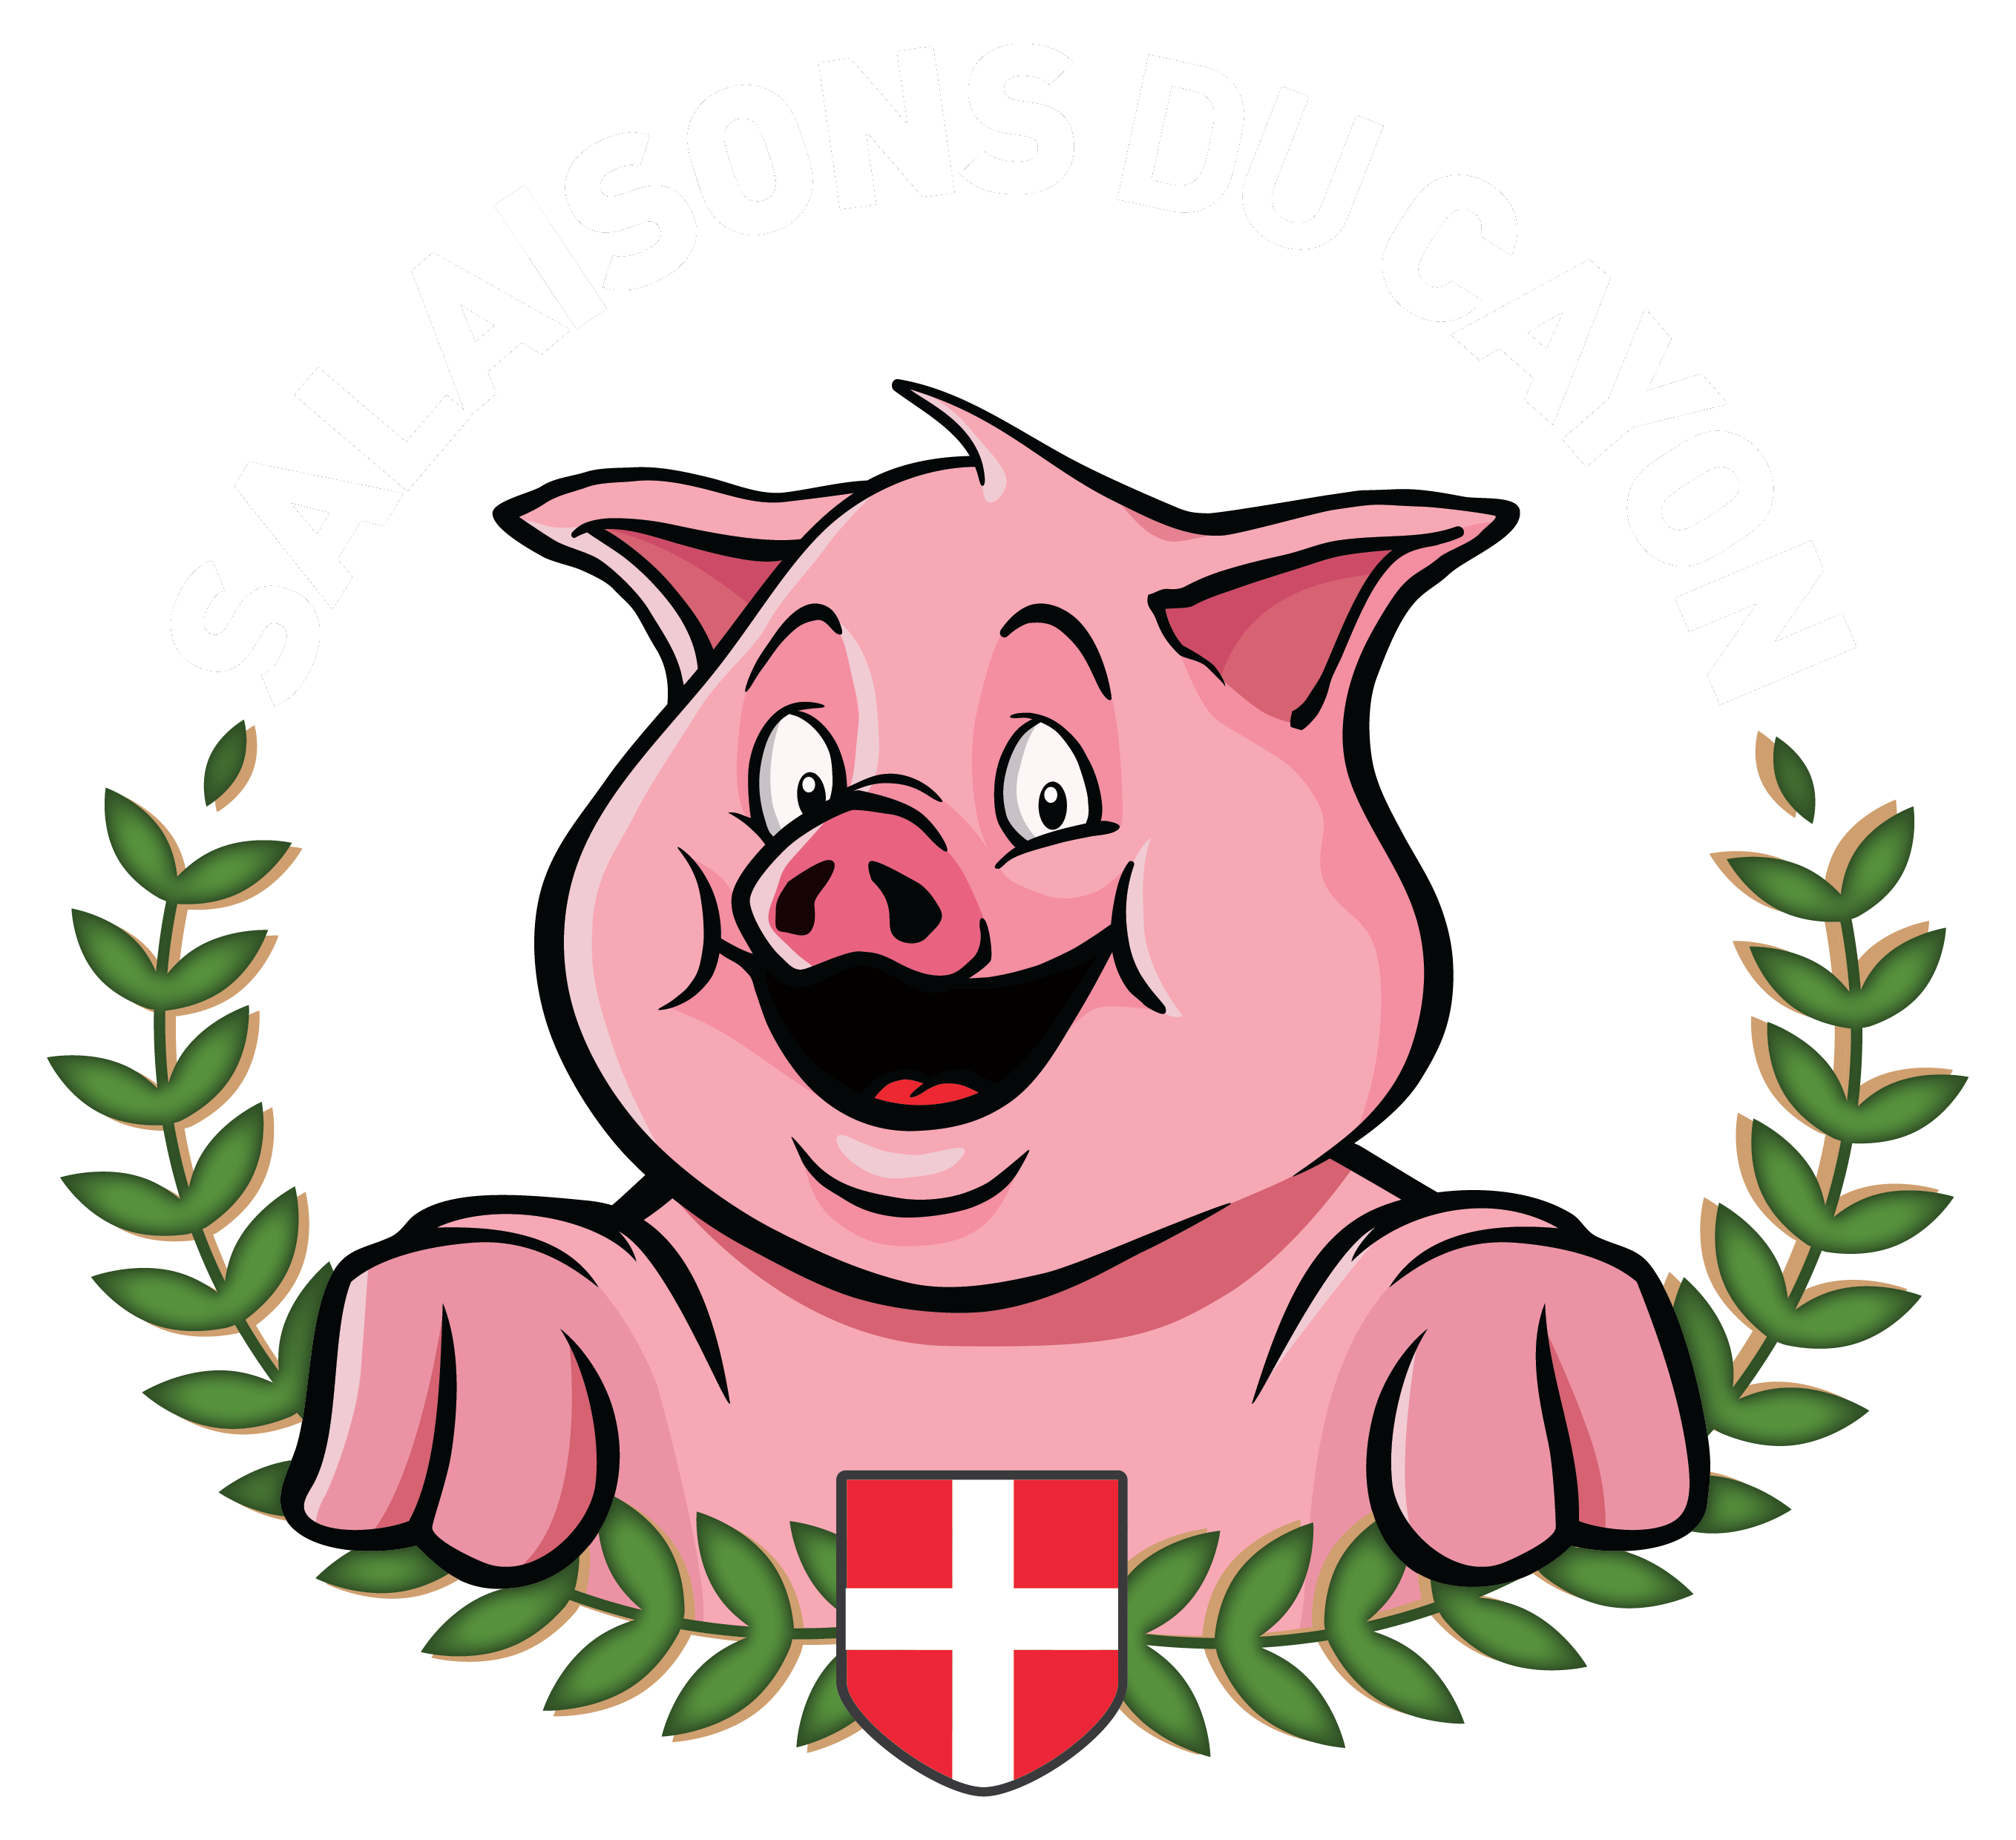 Logo - Salaisons du Cayon, Atelier de fabrication de charcuterie artisanale à Chambéry - Magasin d'usine - Viande française